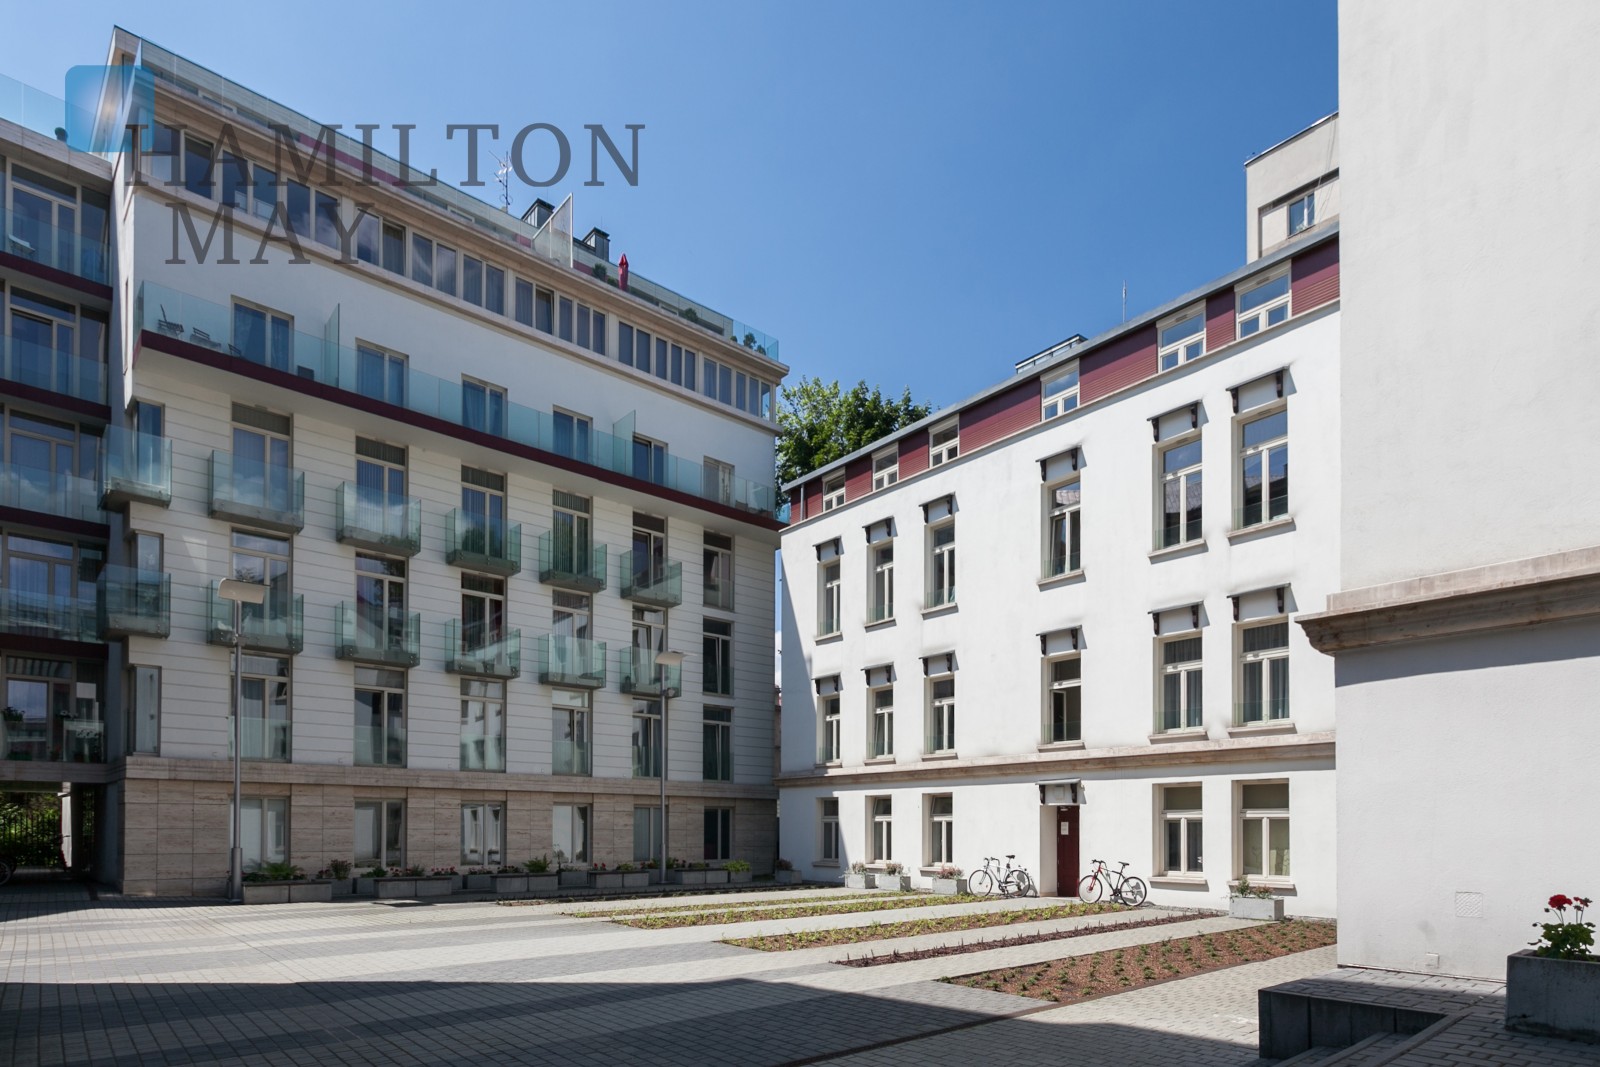 Sobieski Residence - Popularna inwestycja mieszkaniowa w spokojnym otoczeniu Starego Miasta - slider